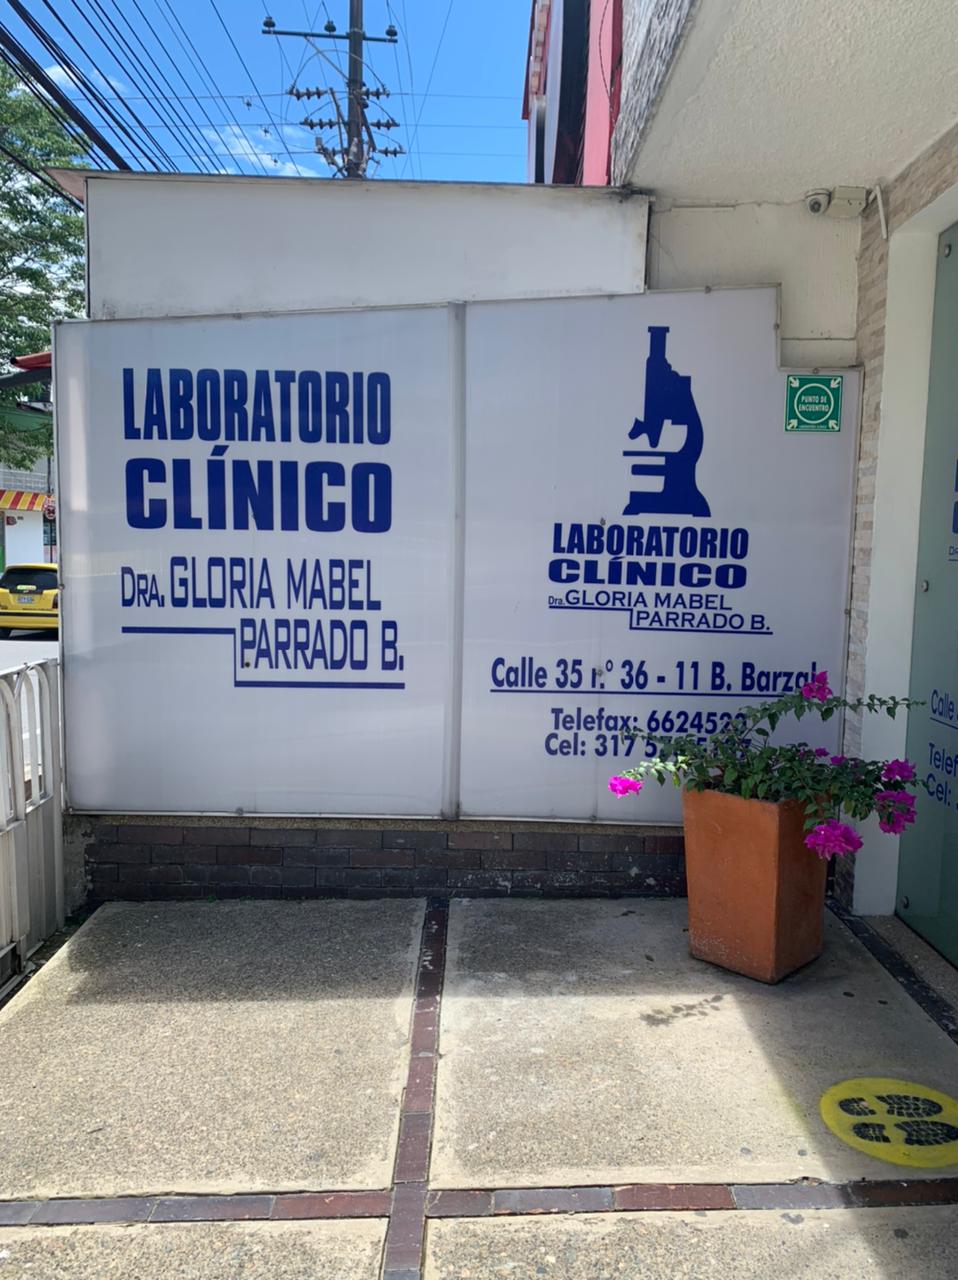 Laboratorio Clinico Dra Gloria Mabel Parrado B.